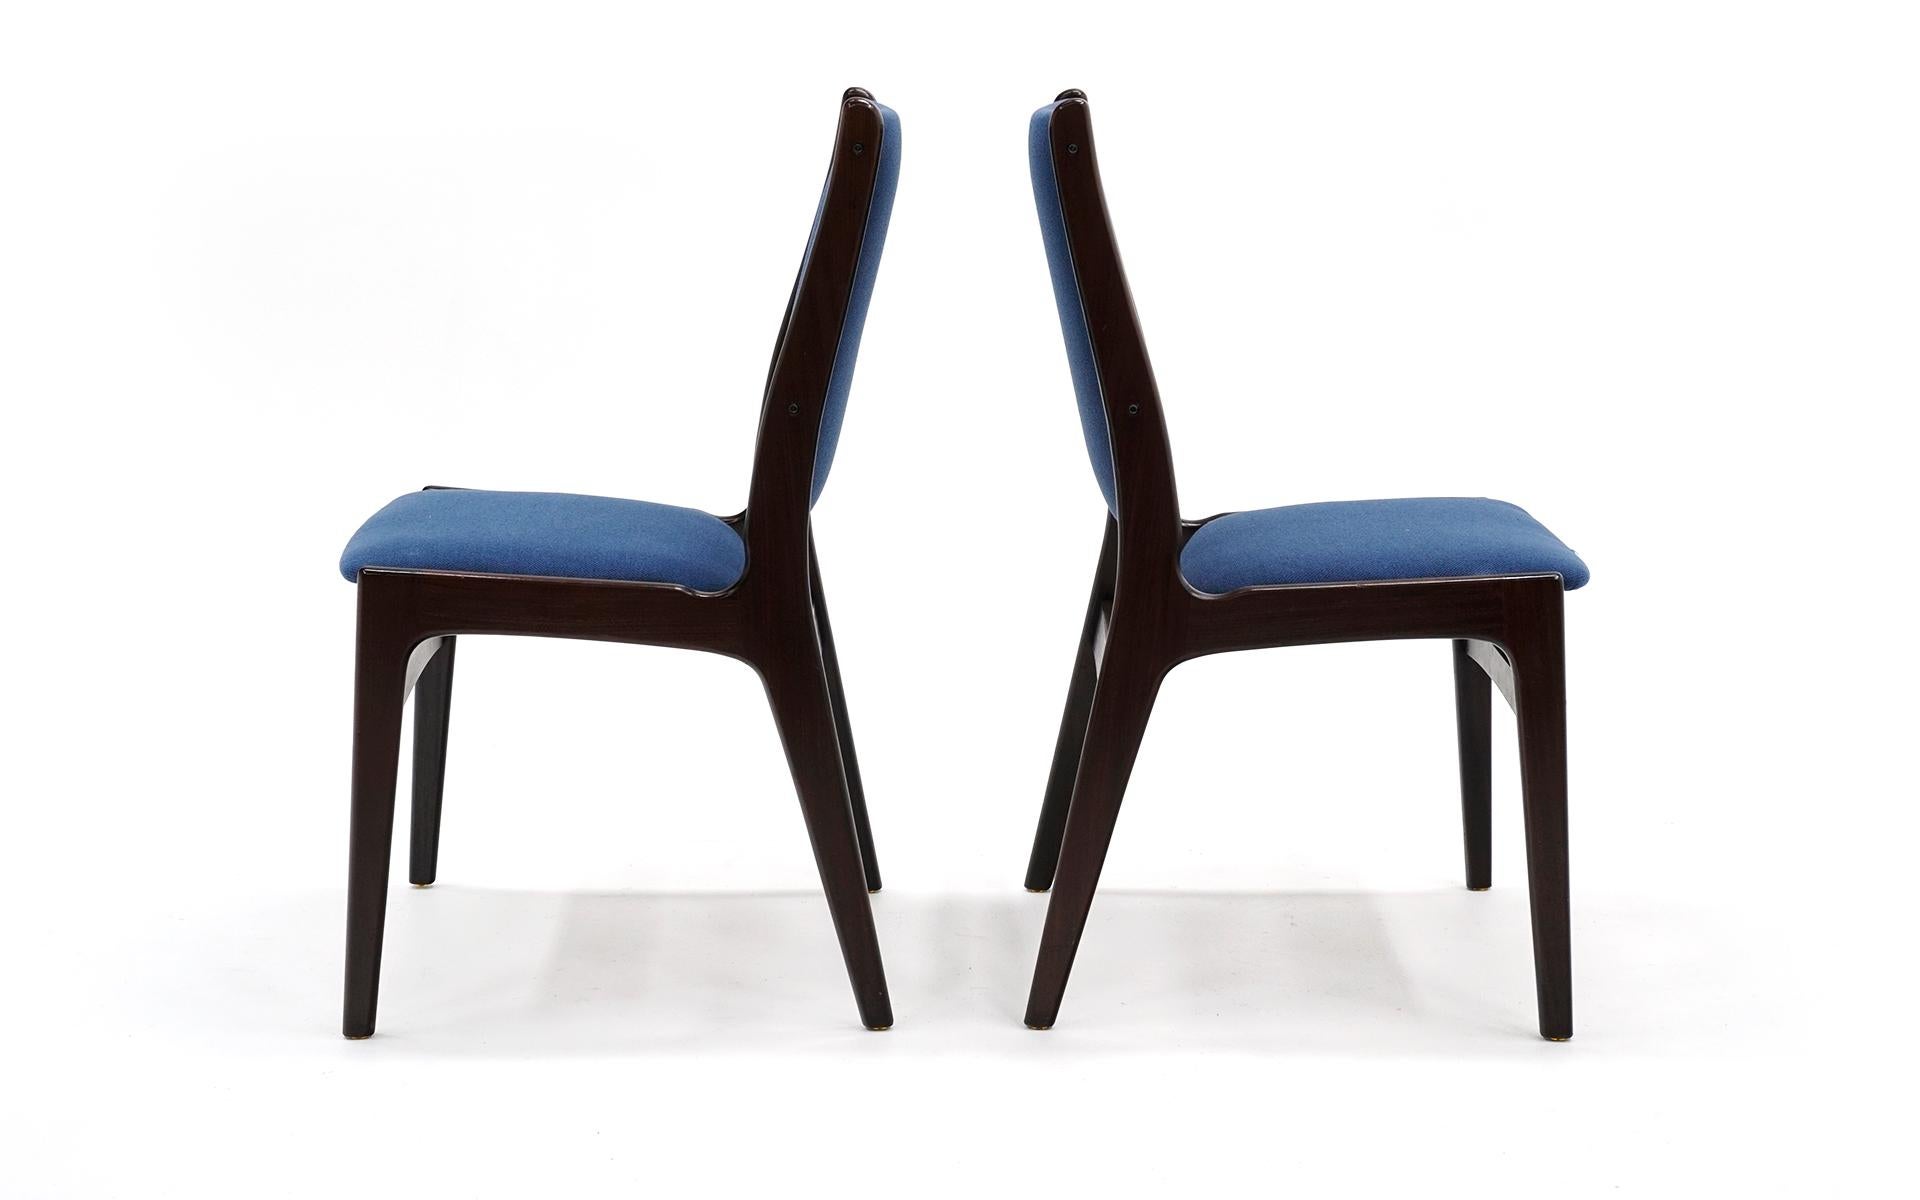 Danois Dix chaises de salon modernes danoises en bois de rose, tissu bleu, étiquettes sur plusieurs chaises en vente